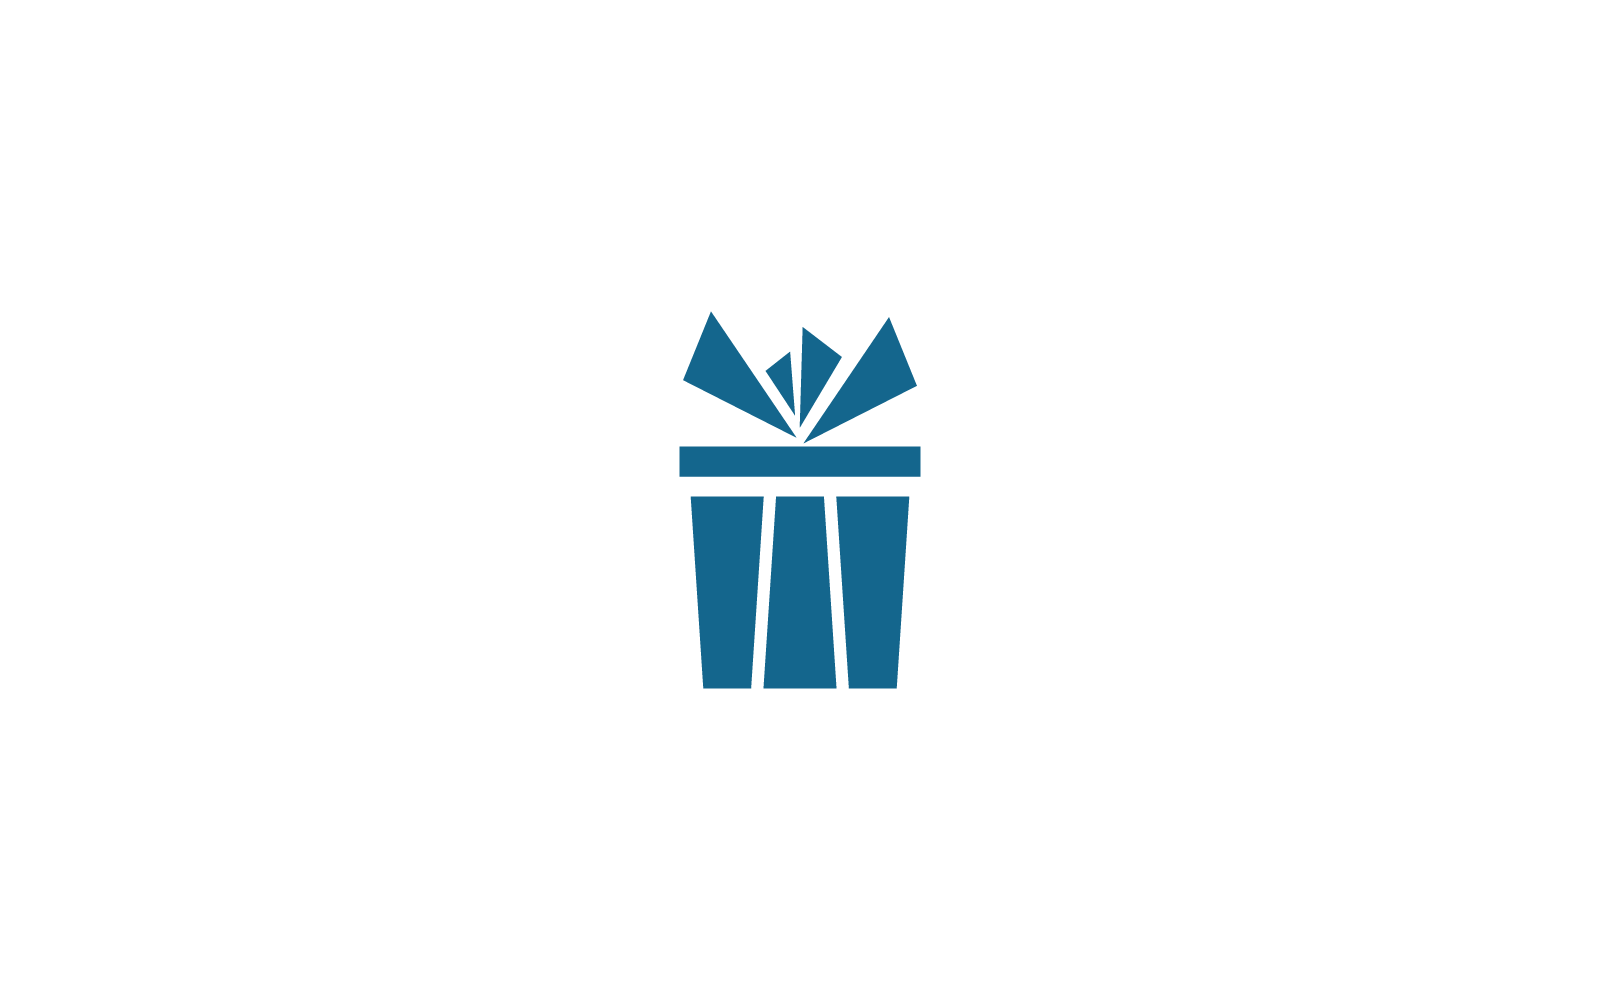 Gift Box, gift shop icon vector logo flat design